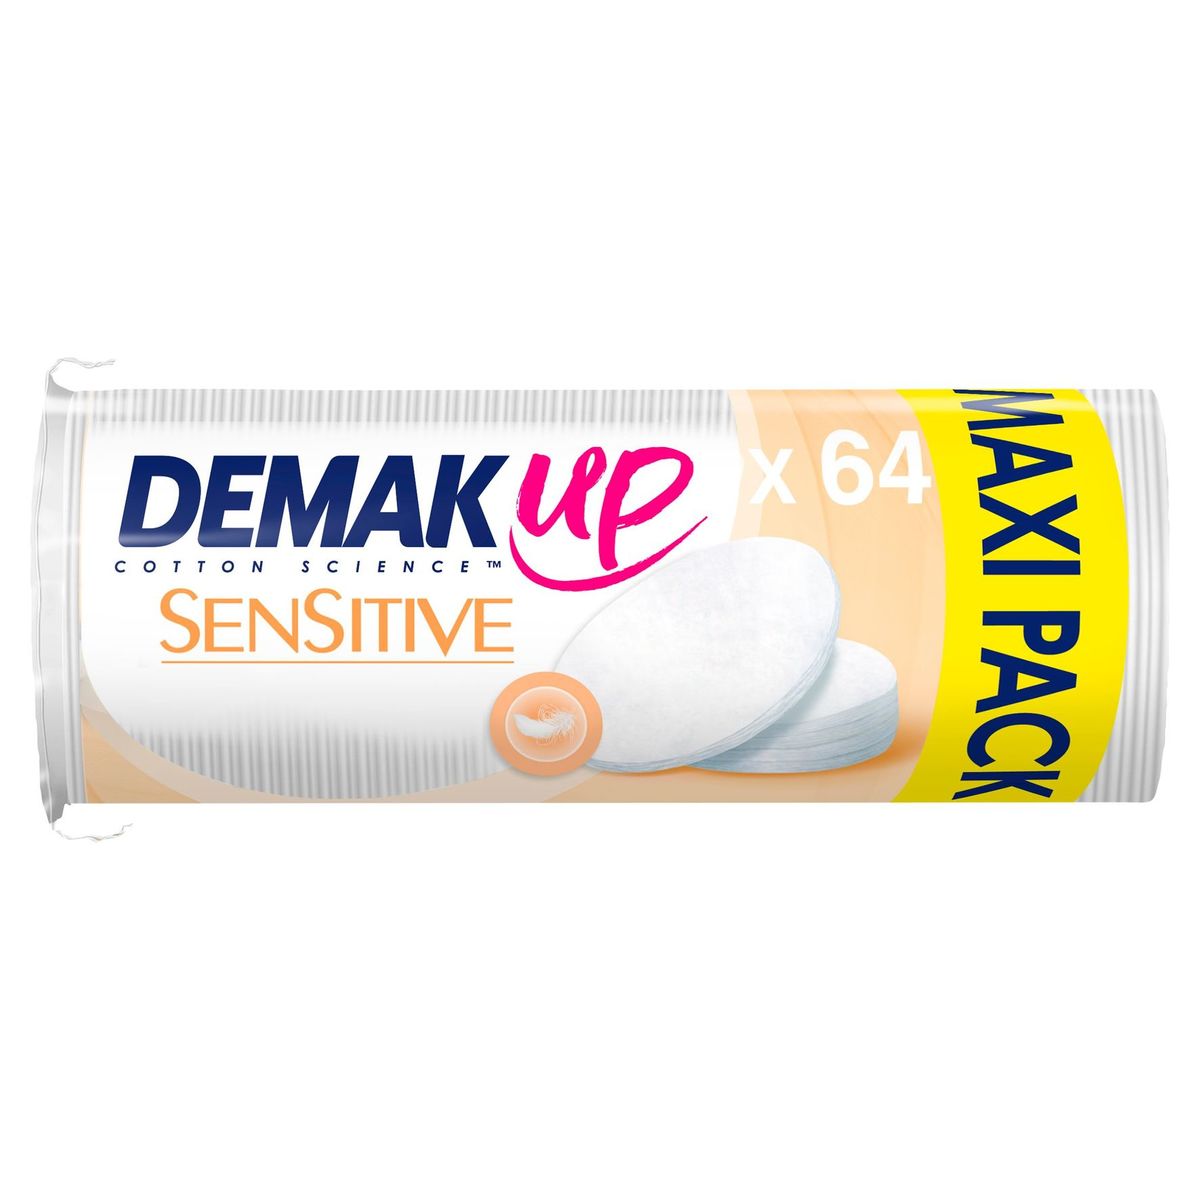 Demak'Up Sensitive Maxi Pack 64 Stuks